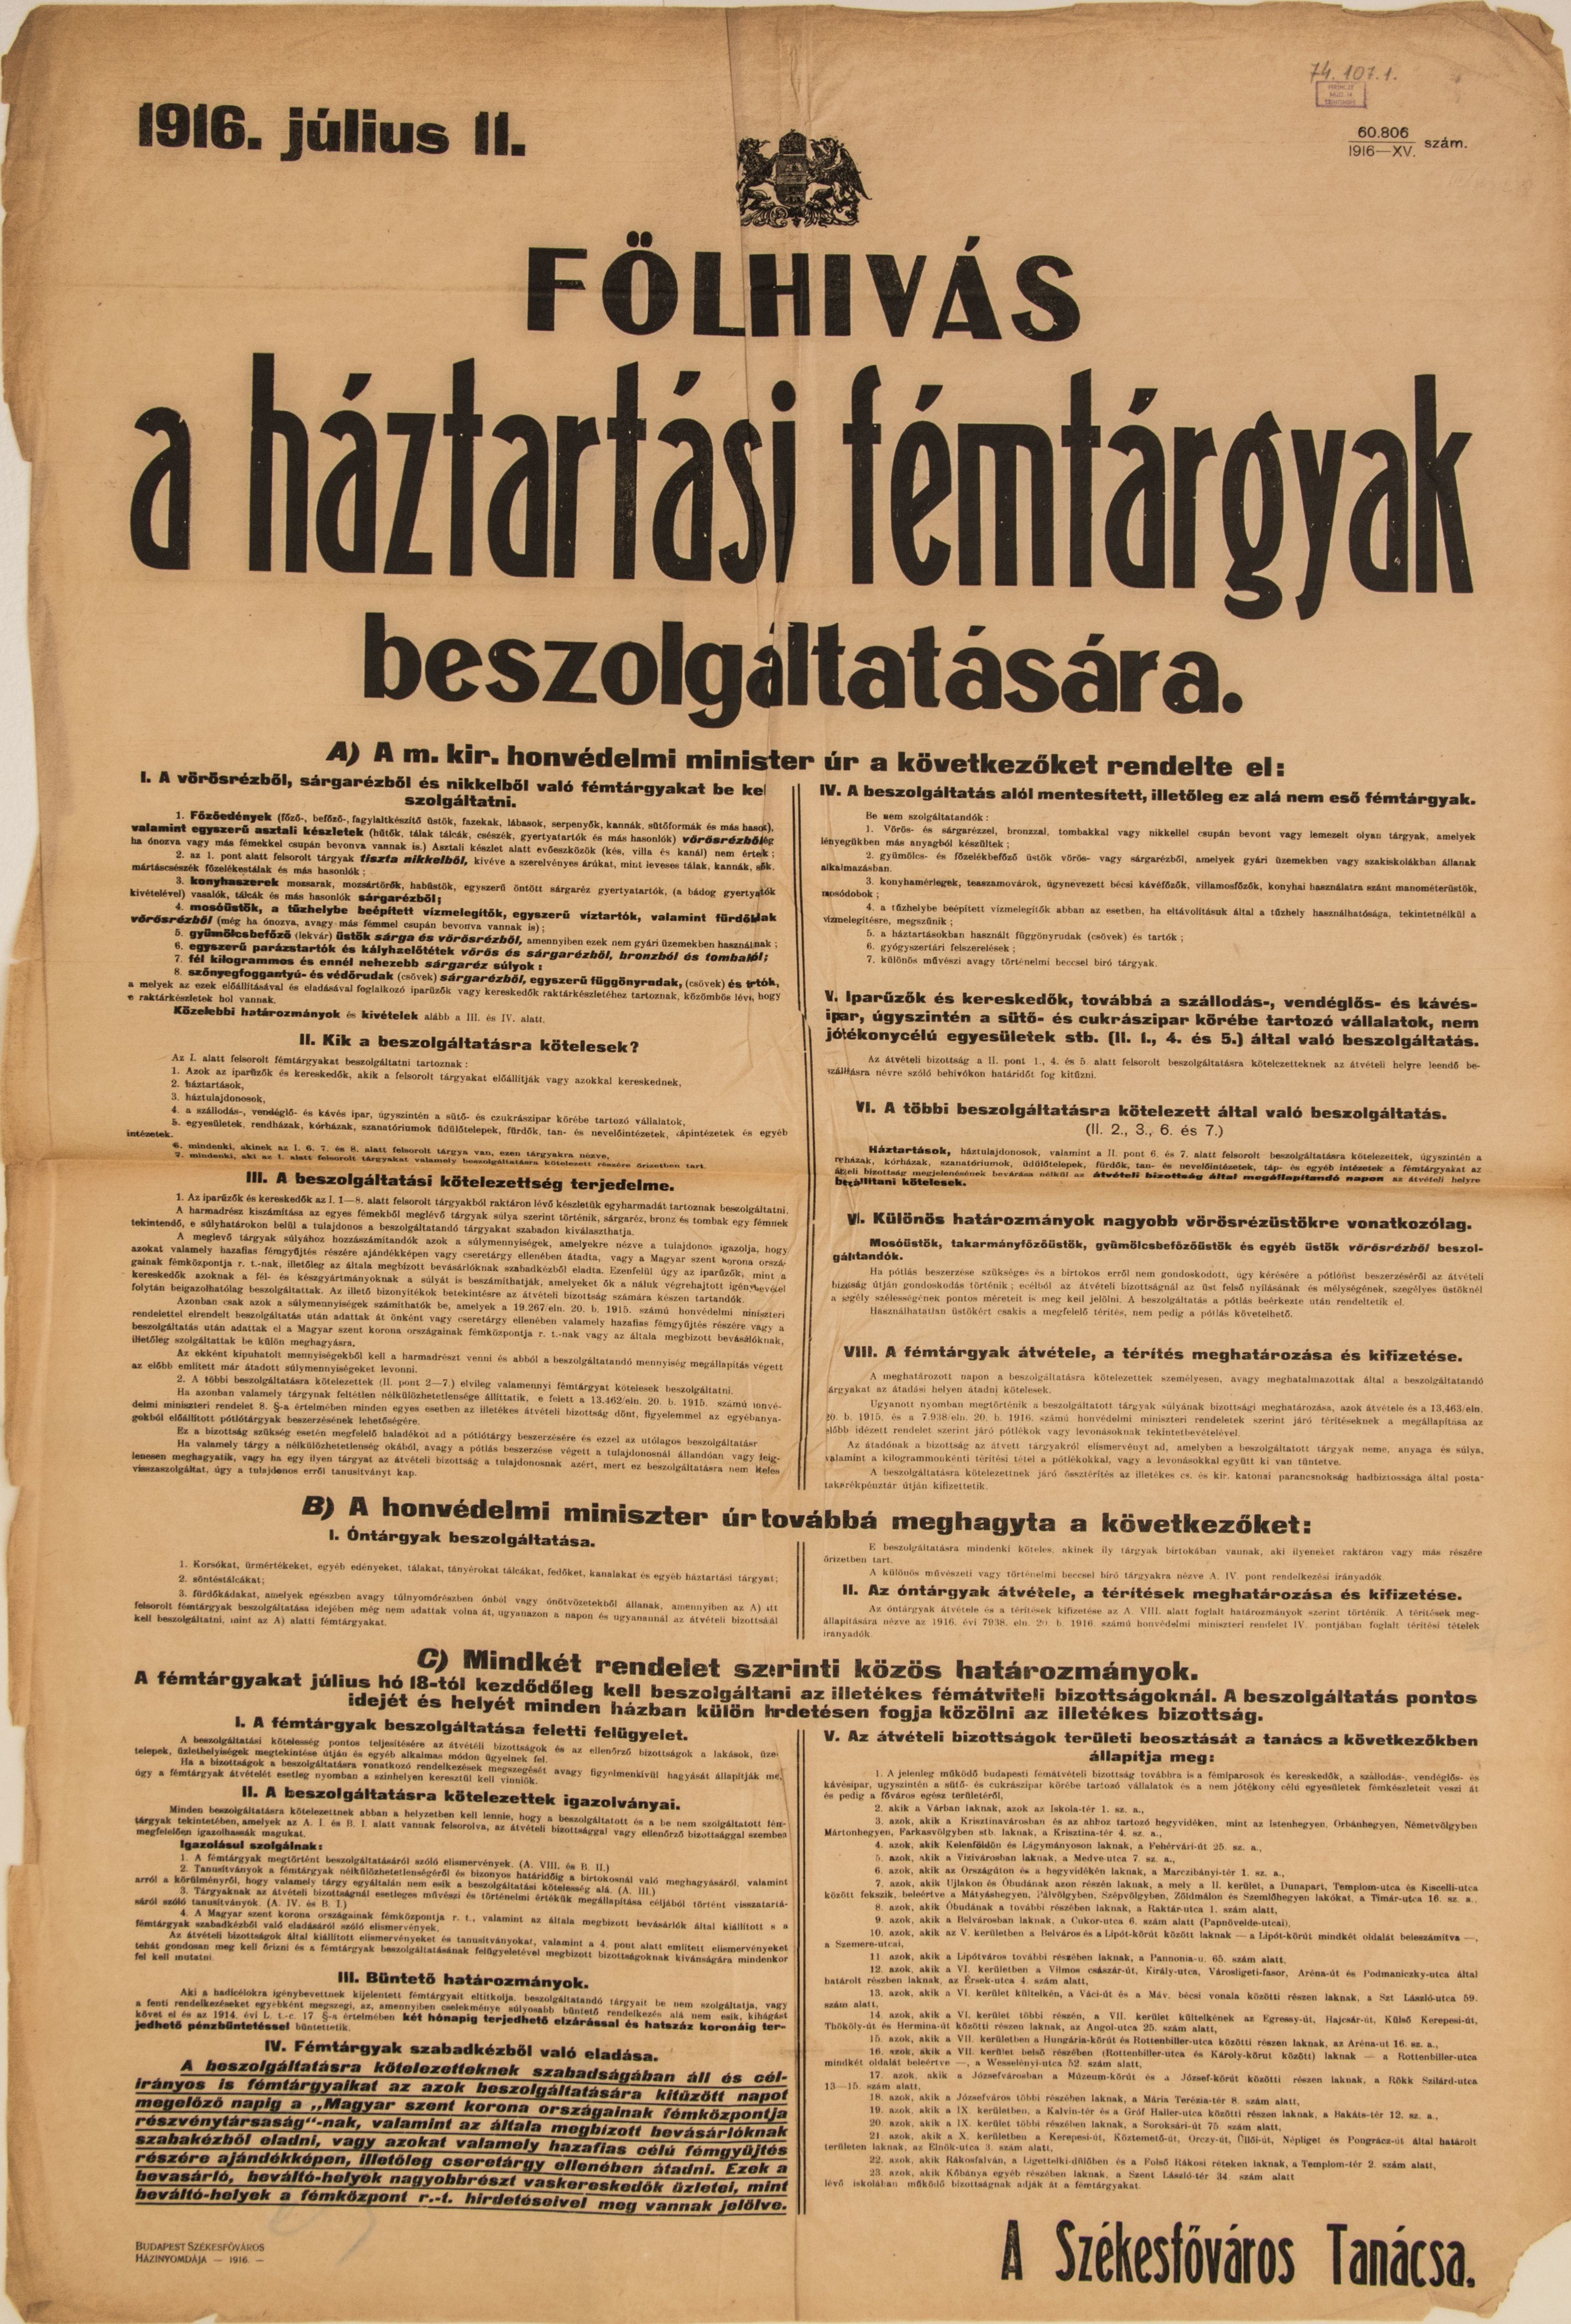 Felhívás a háztartási fémtárgyak beszolgáltatására, 1916.07.11 (Ferenczy Múzeumi Centrum CC BY-NC-SA)